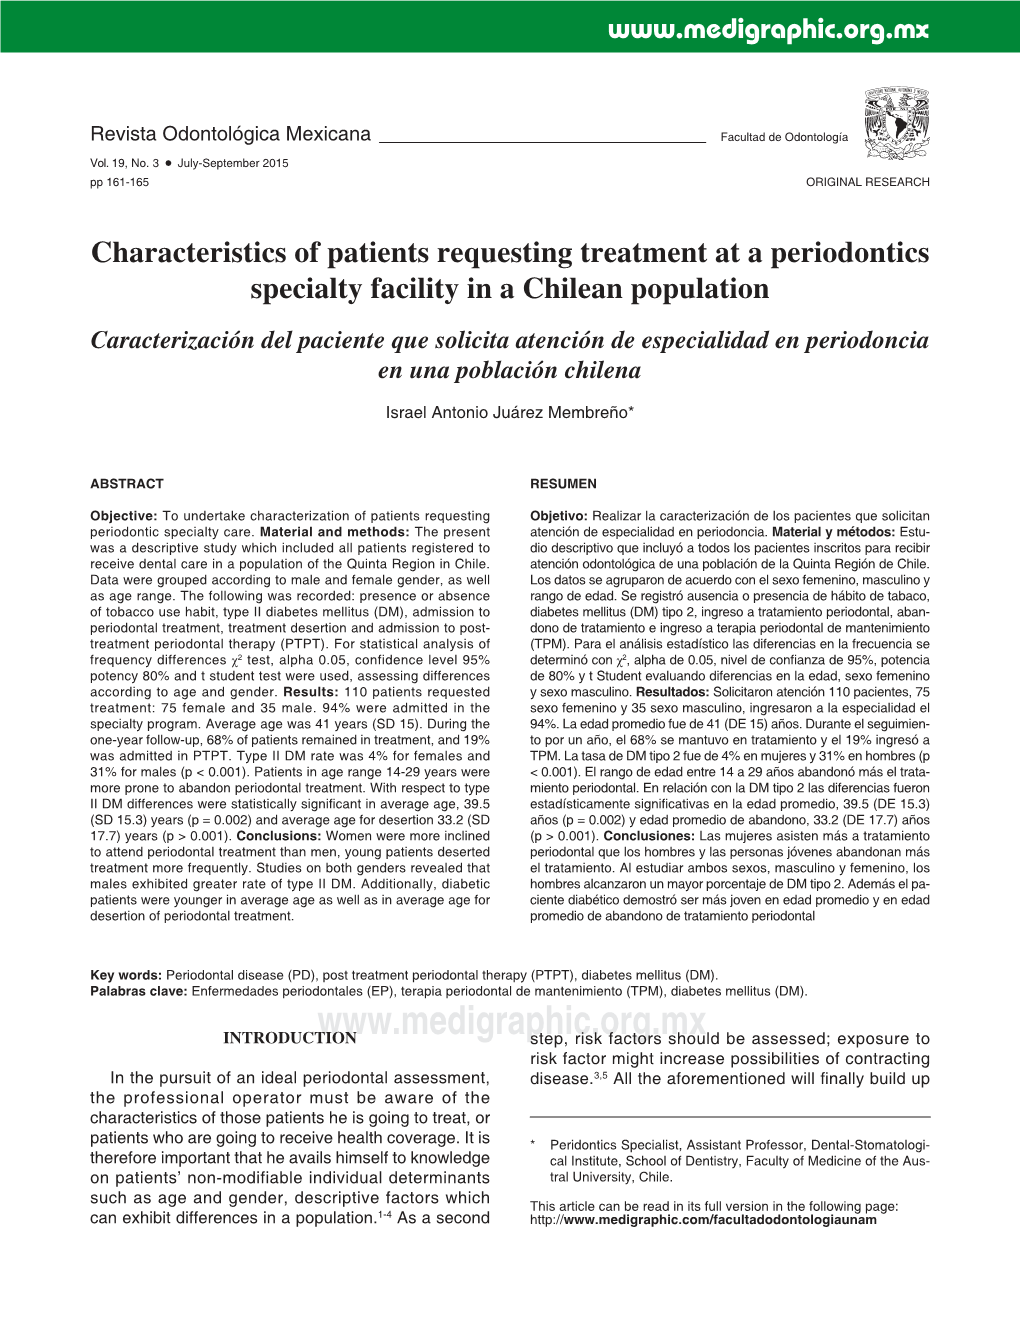 Characteristics of Patients Requesting Treatment at a Periodontics Specialty